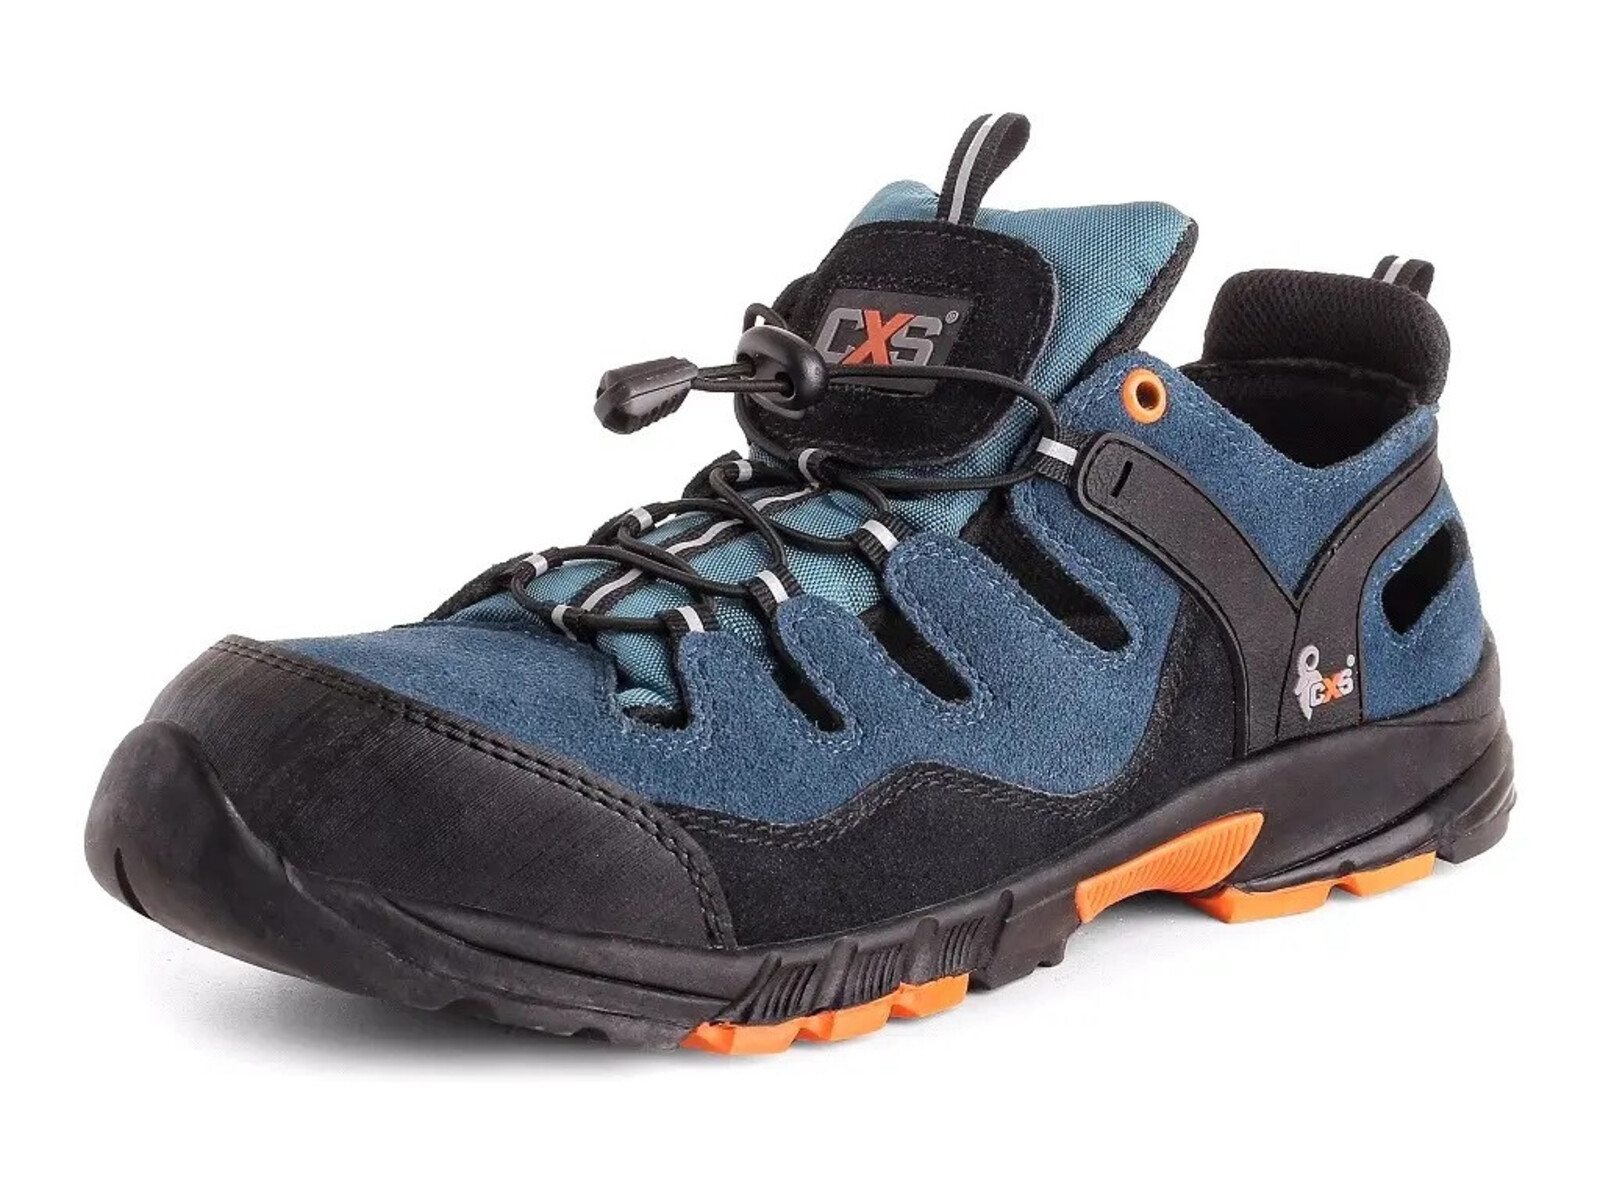 Bezpečnostné sandále CXS Land Cabrera S1 SRC - veľkosť: 37, farba: modrá/oranžová